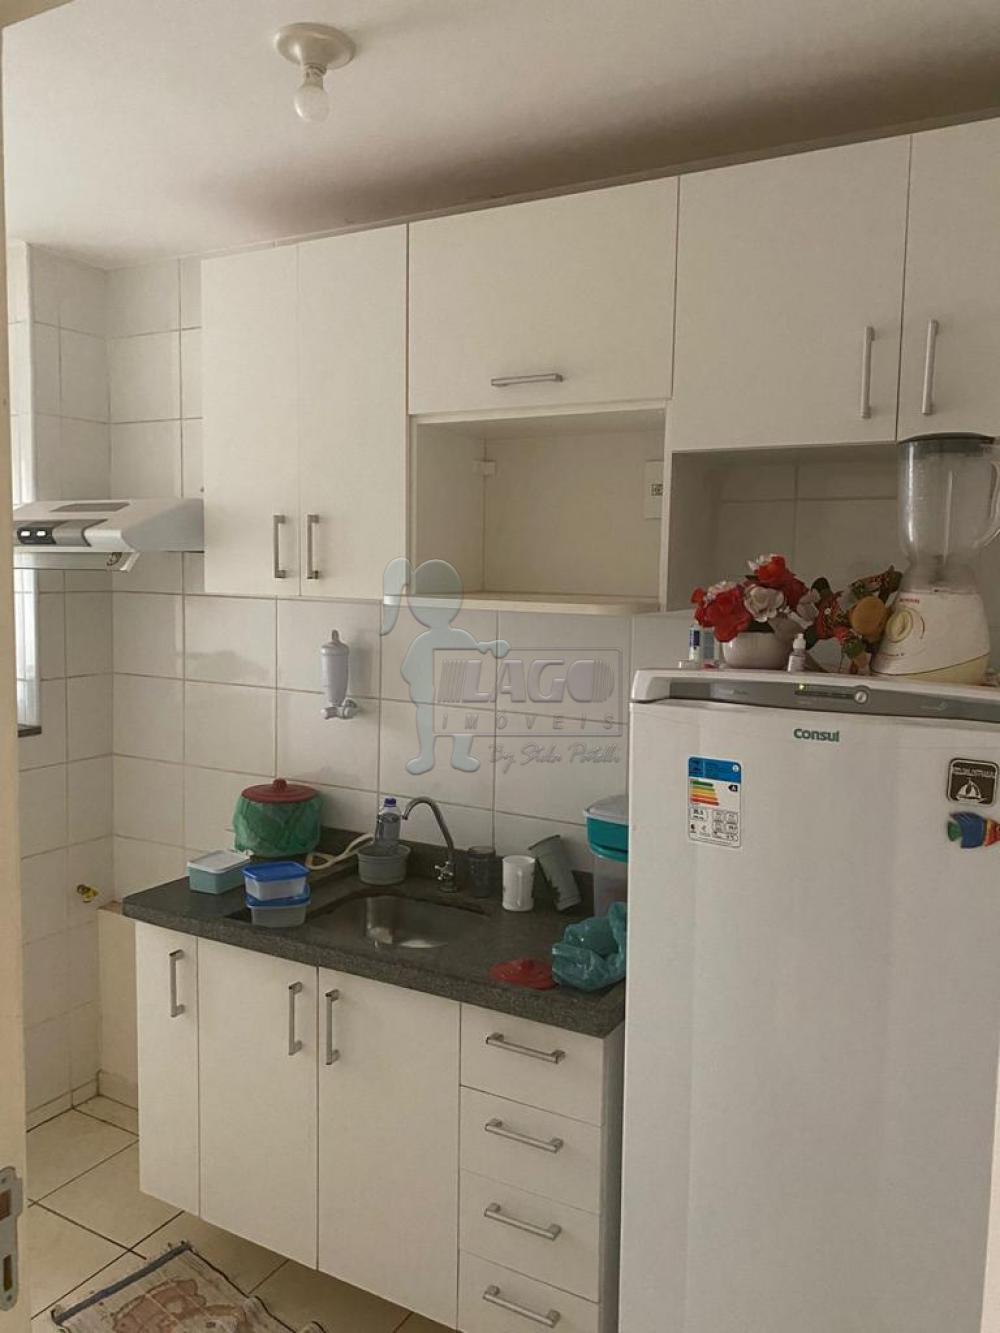 Comprar Apartamentos / Padrão em Ribeirão Preto R$ 180.000,00 - Foto 3